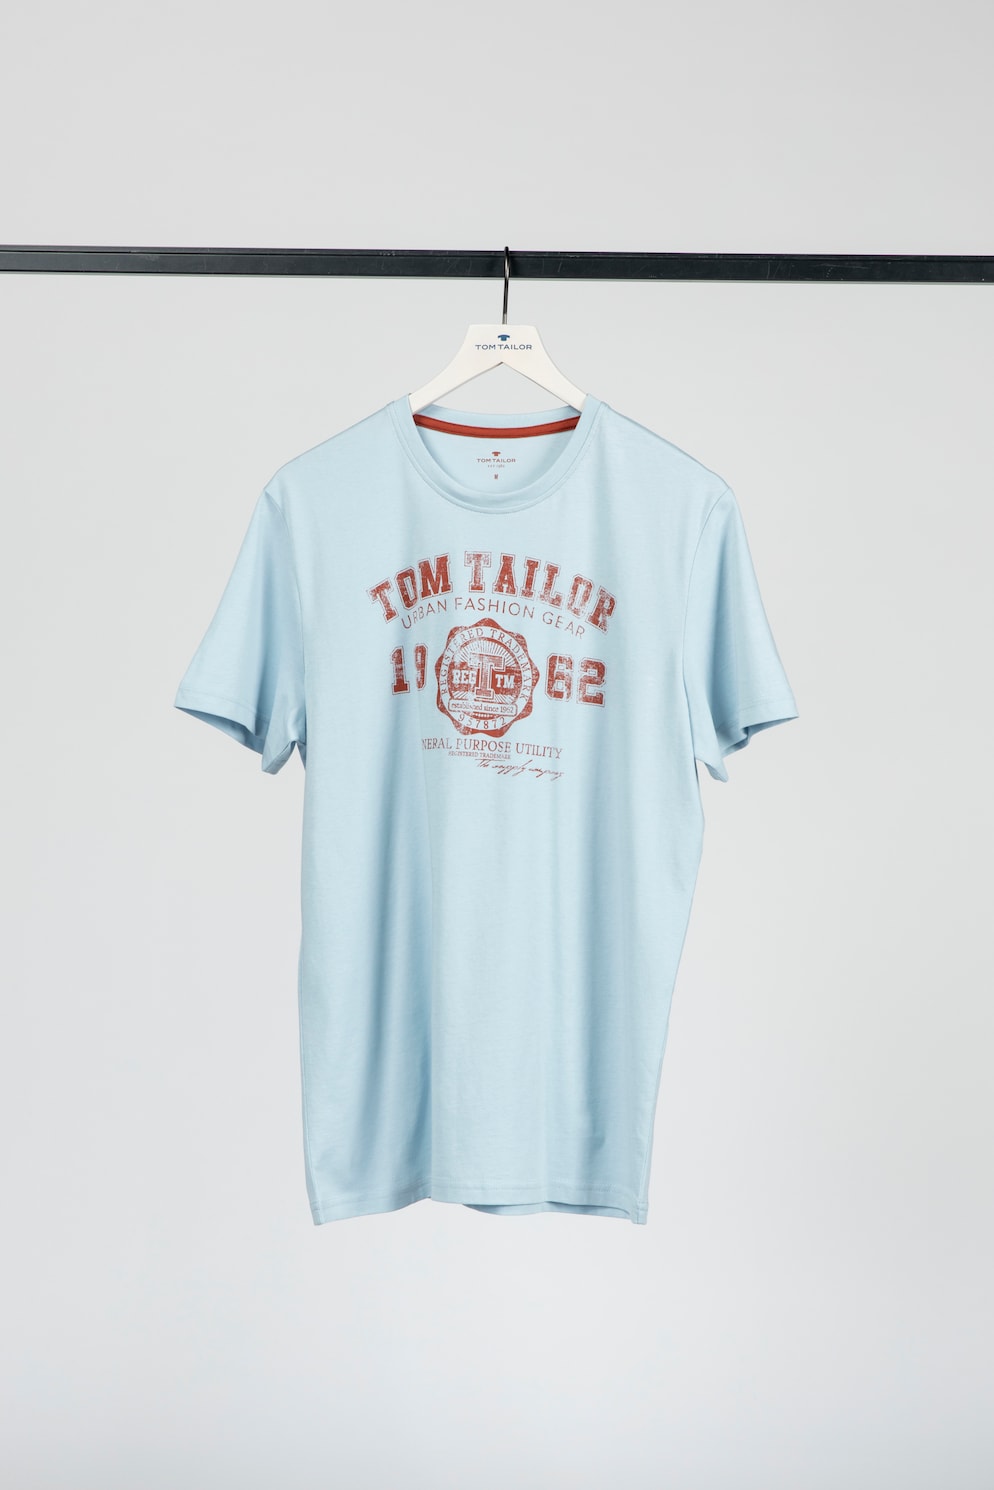 TOM TAILOR T-shirt met logo print, Mannen, blauw, Größe L